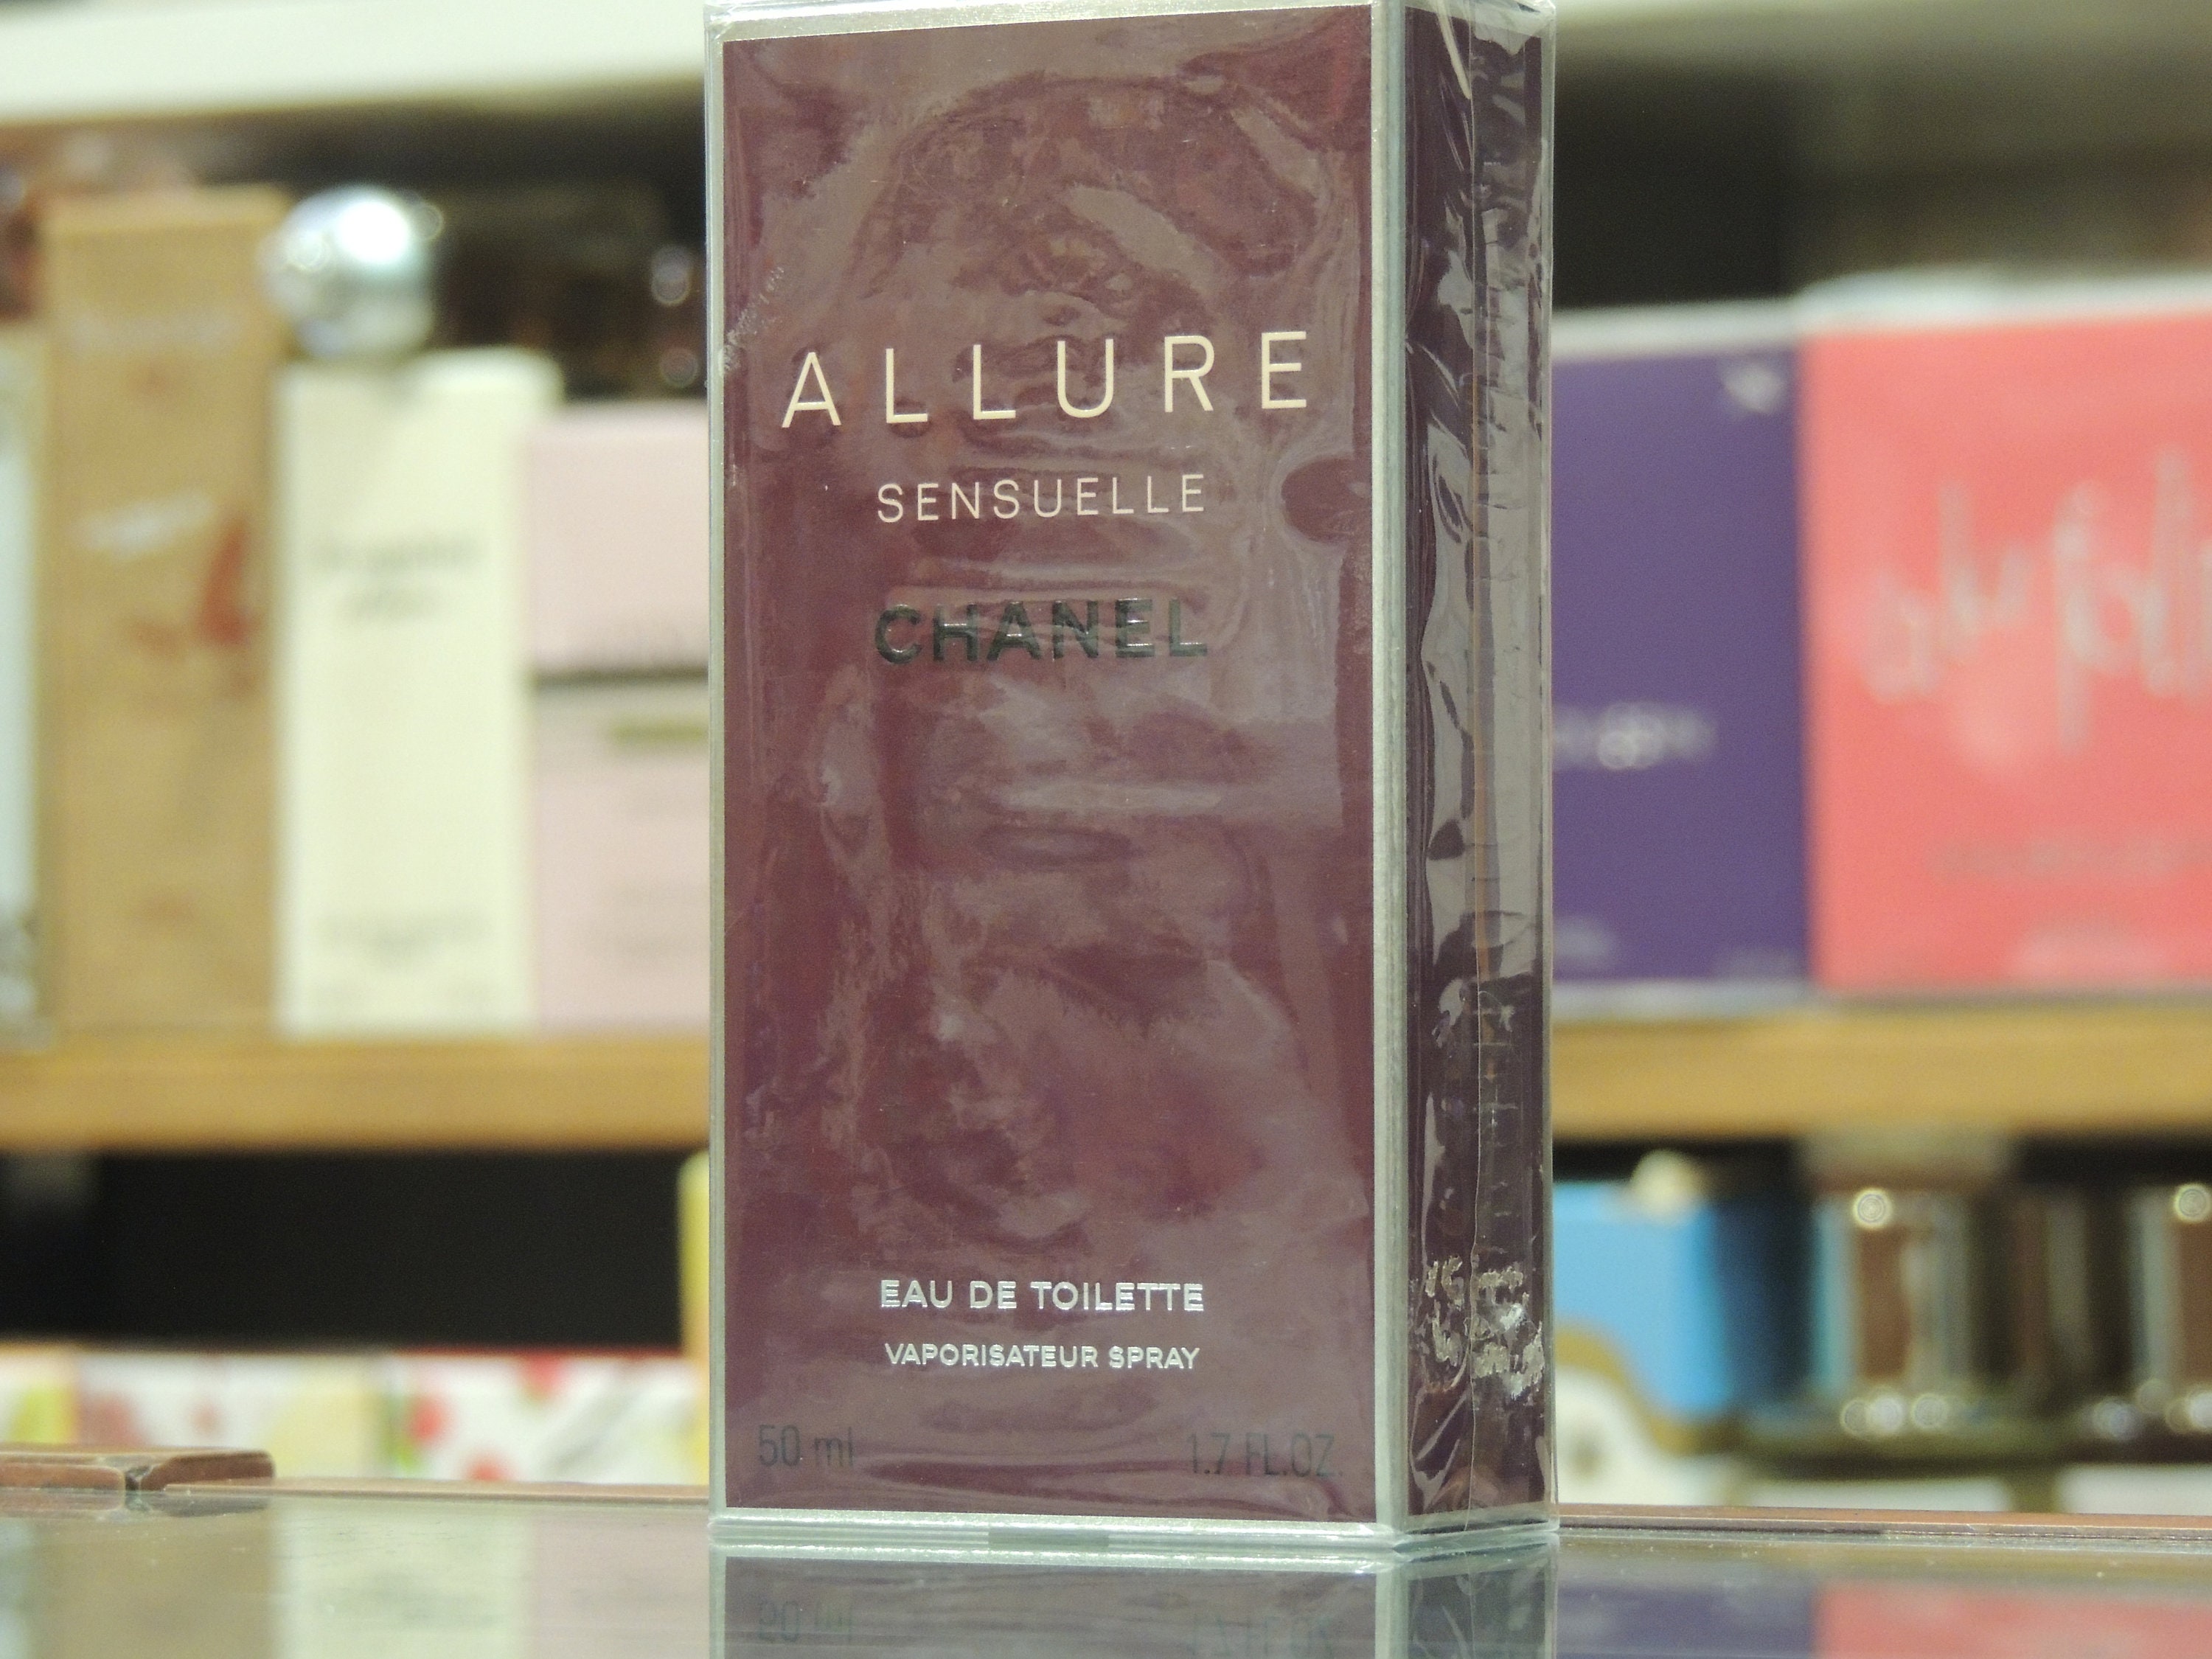 Chanel Allure Sensuelle Eau de Parfum Vaporisateur Spray, 50 ml / 1.7 fl. oz